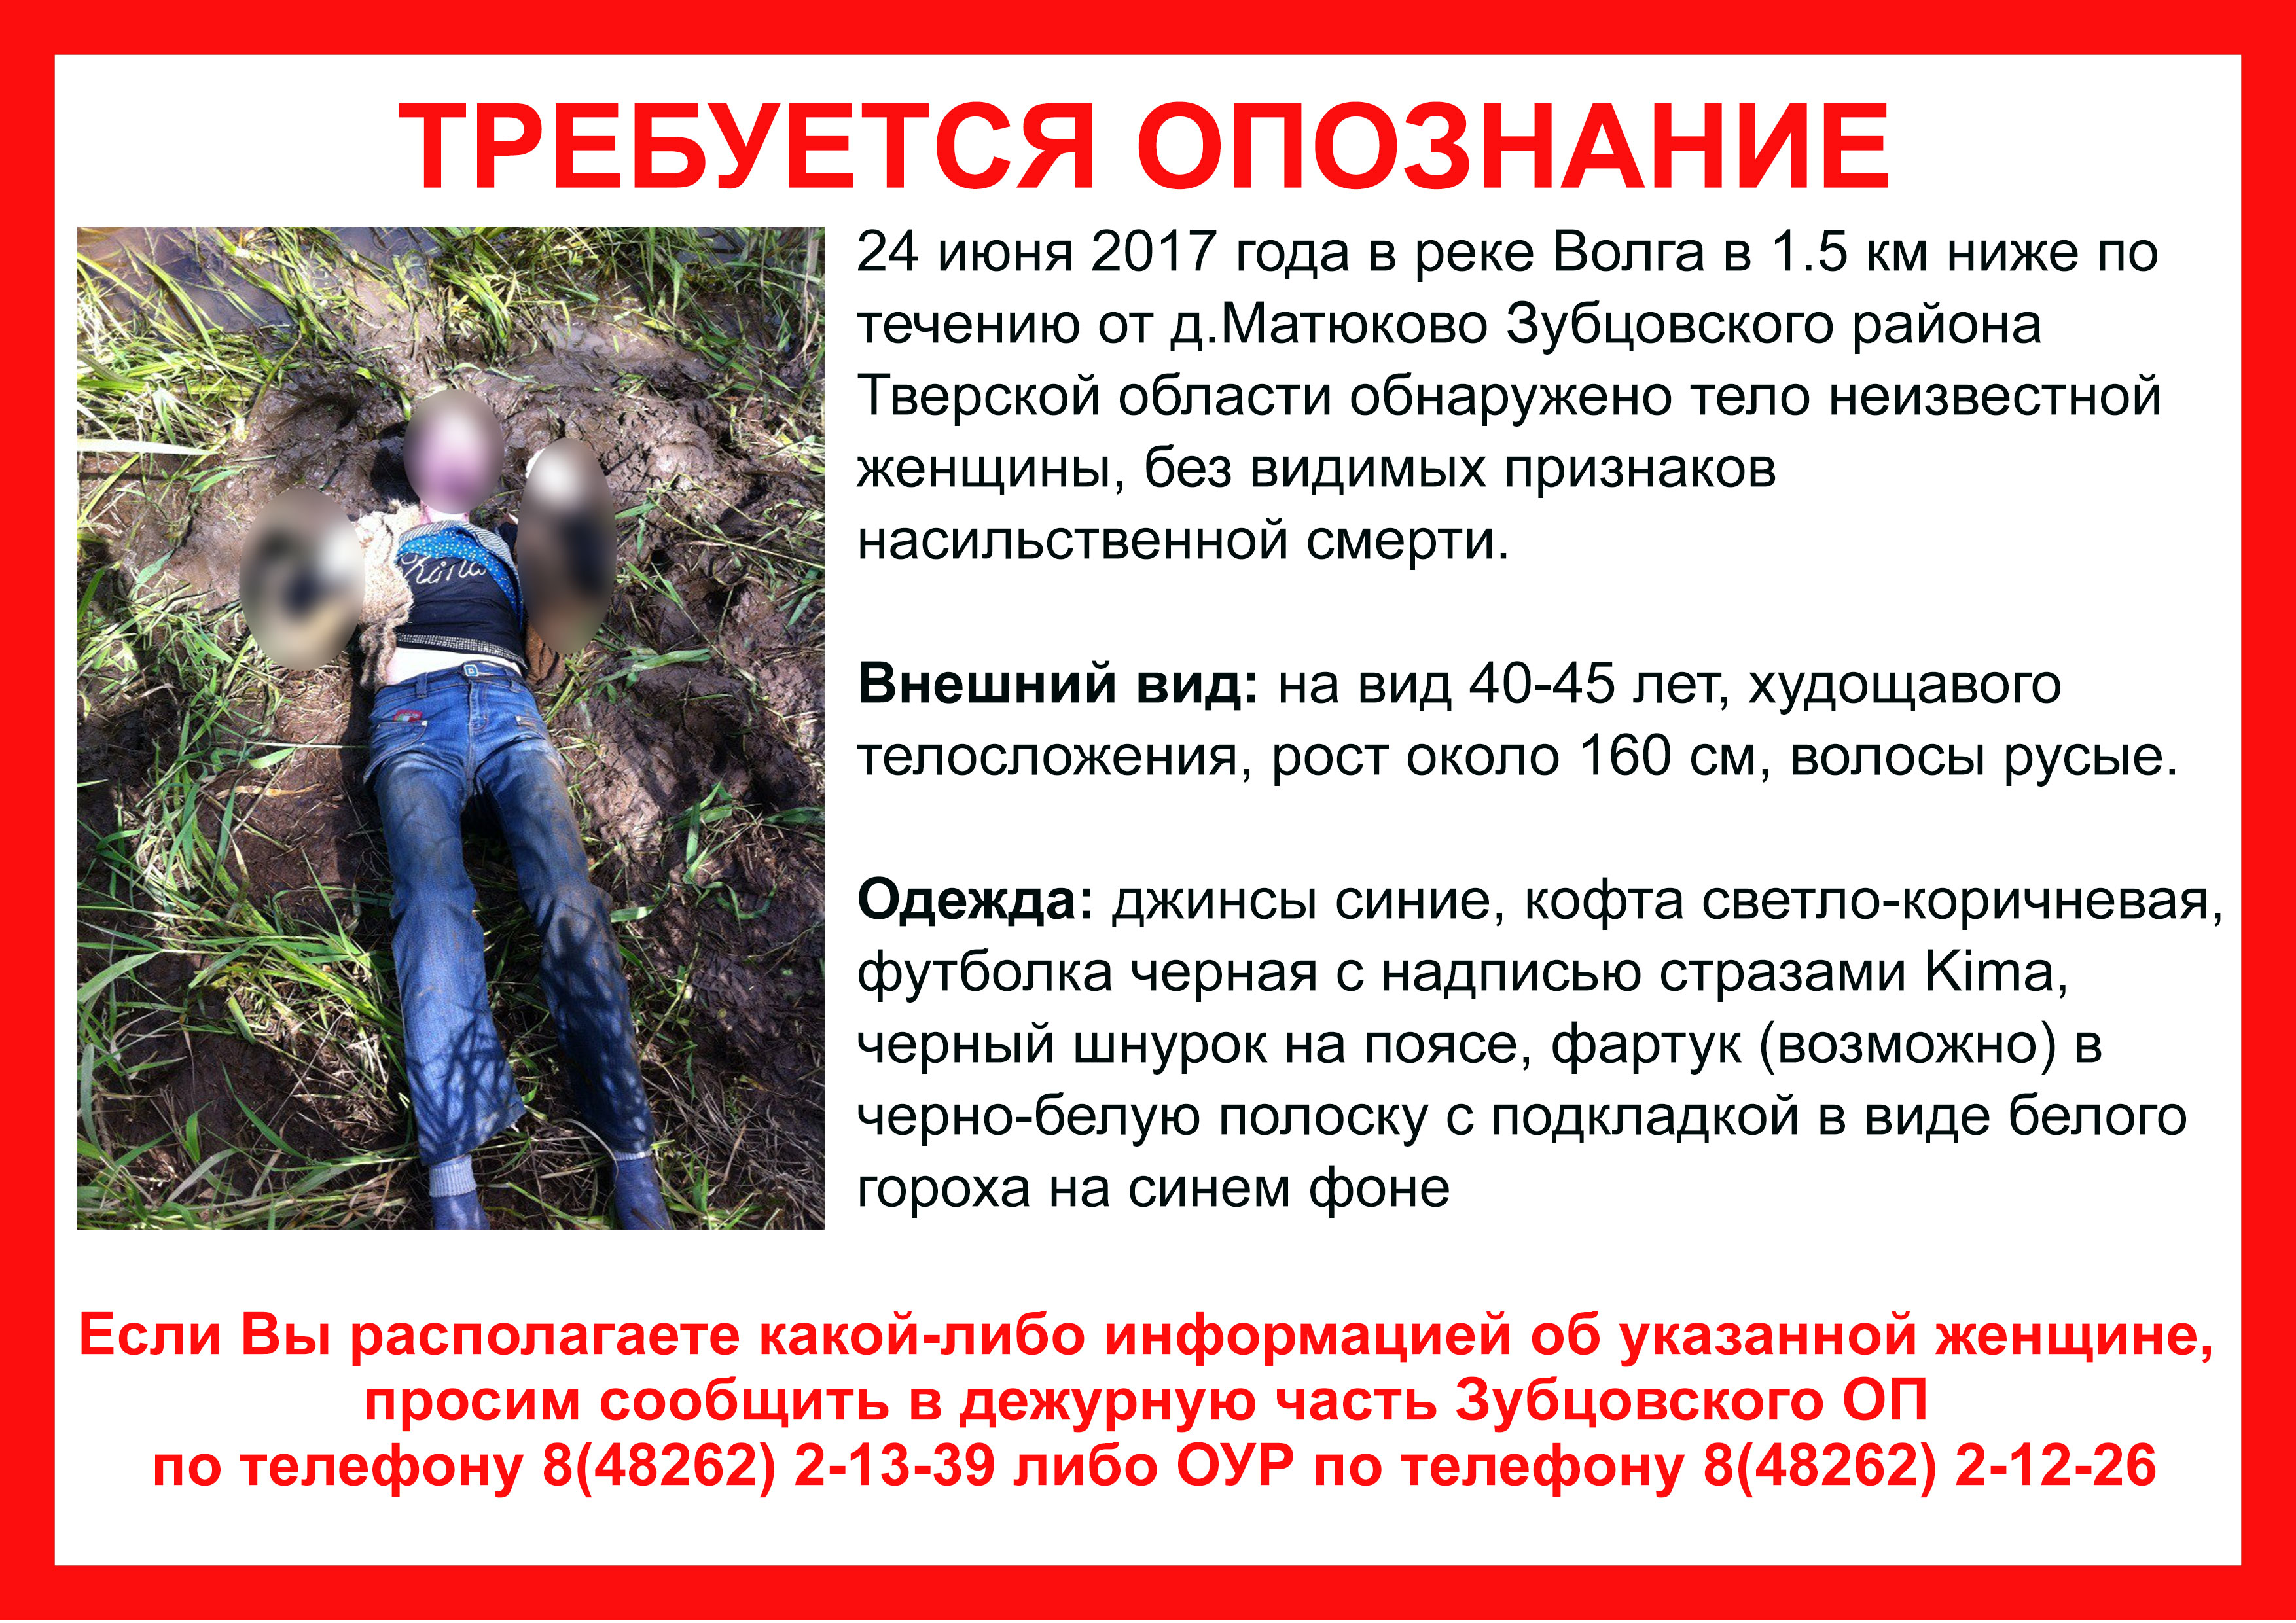 (Опознана) В Зубцовском районе нашли погибшую женщину. Необходима помощь в опознании